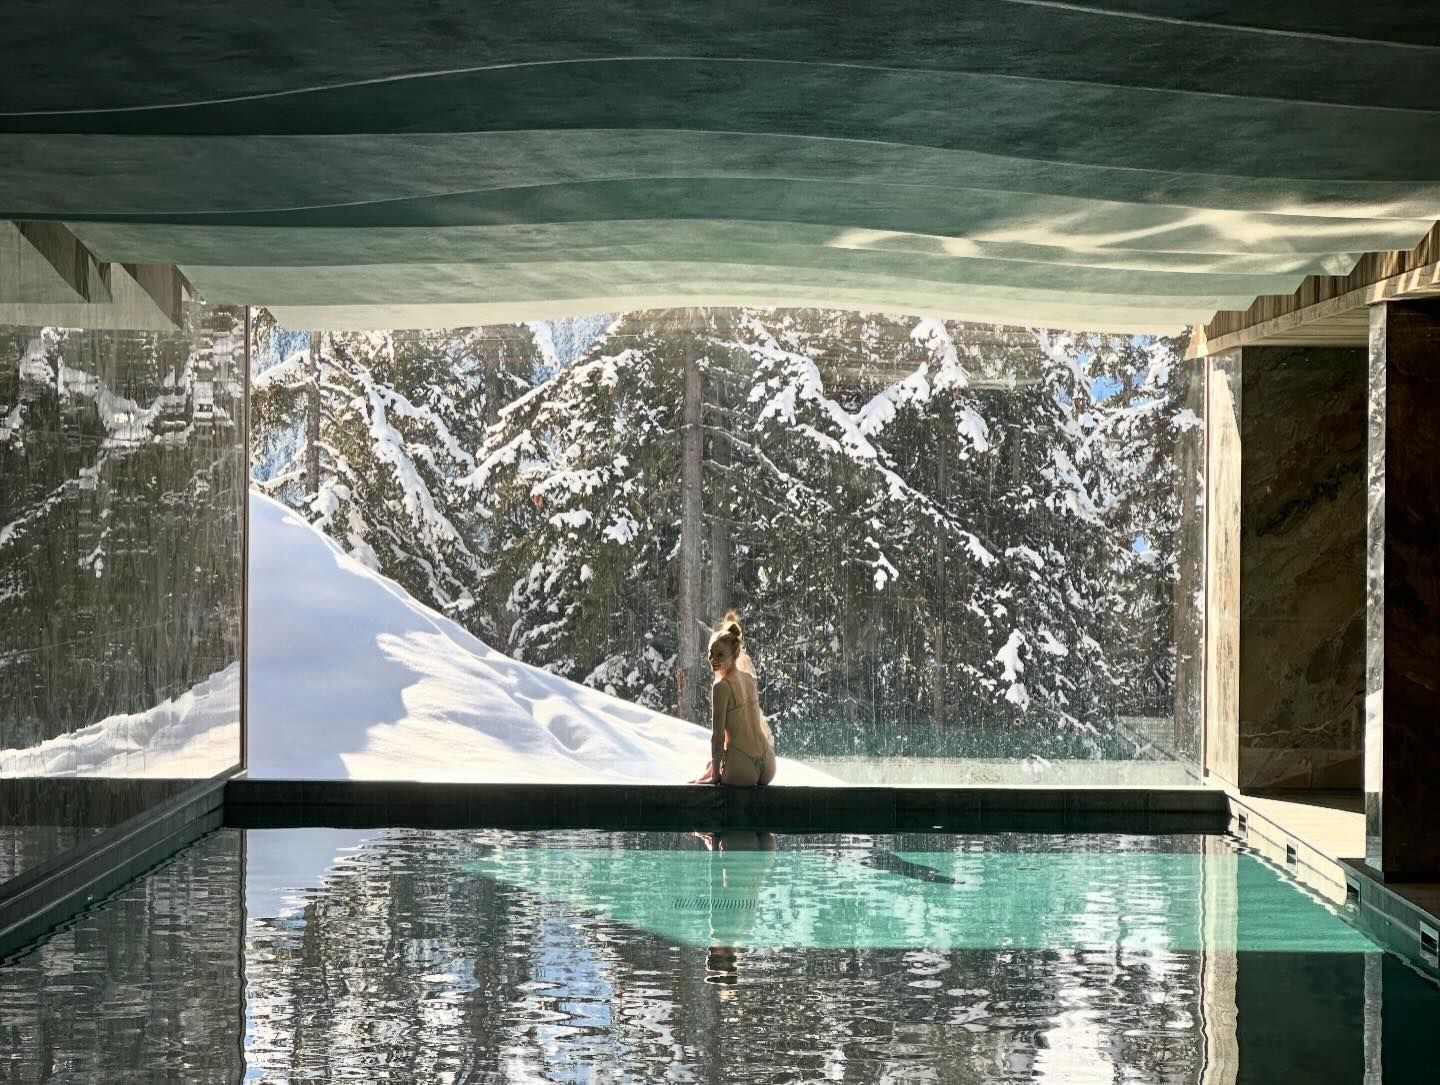 Photos n°2 : Sophie Turner’s Snowy Pool Day!